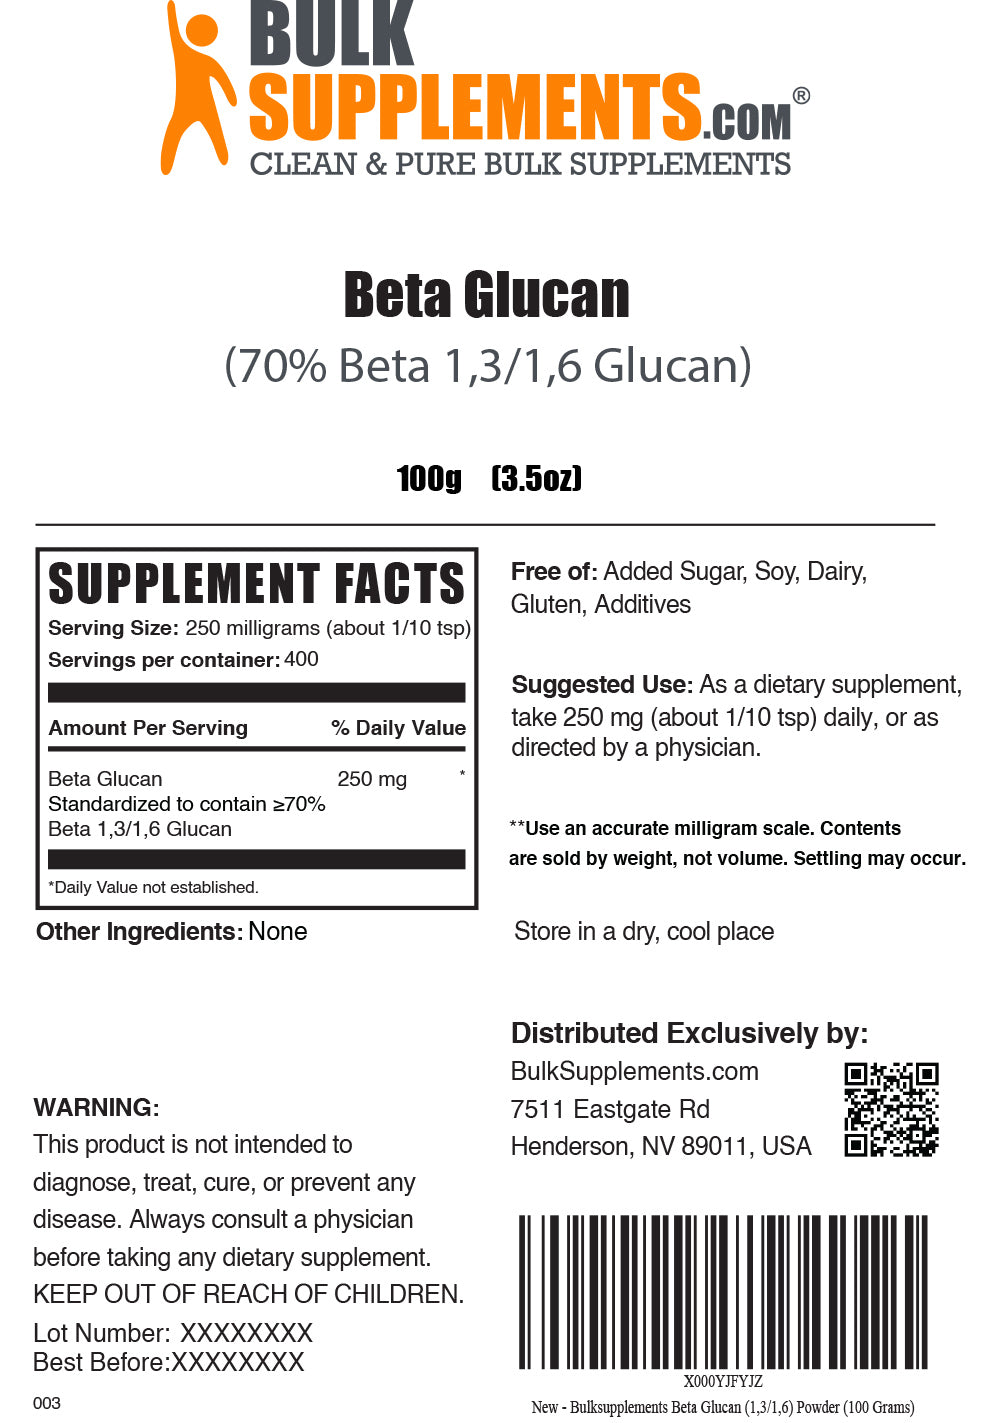 Beta Glucan 1,3/1,6 Powder